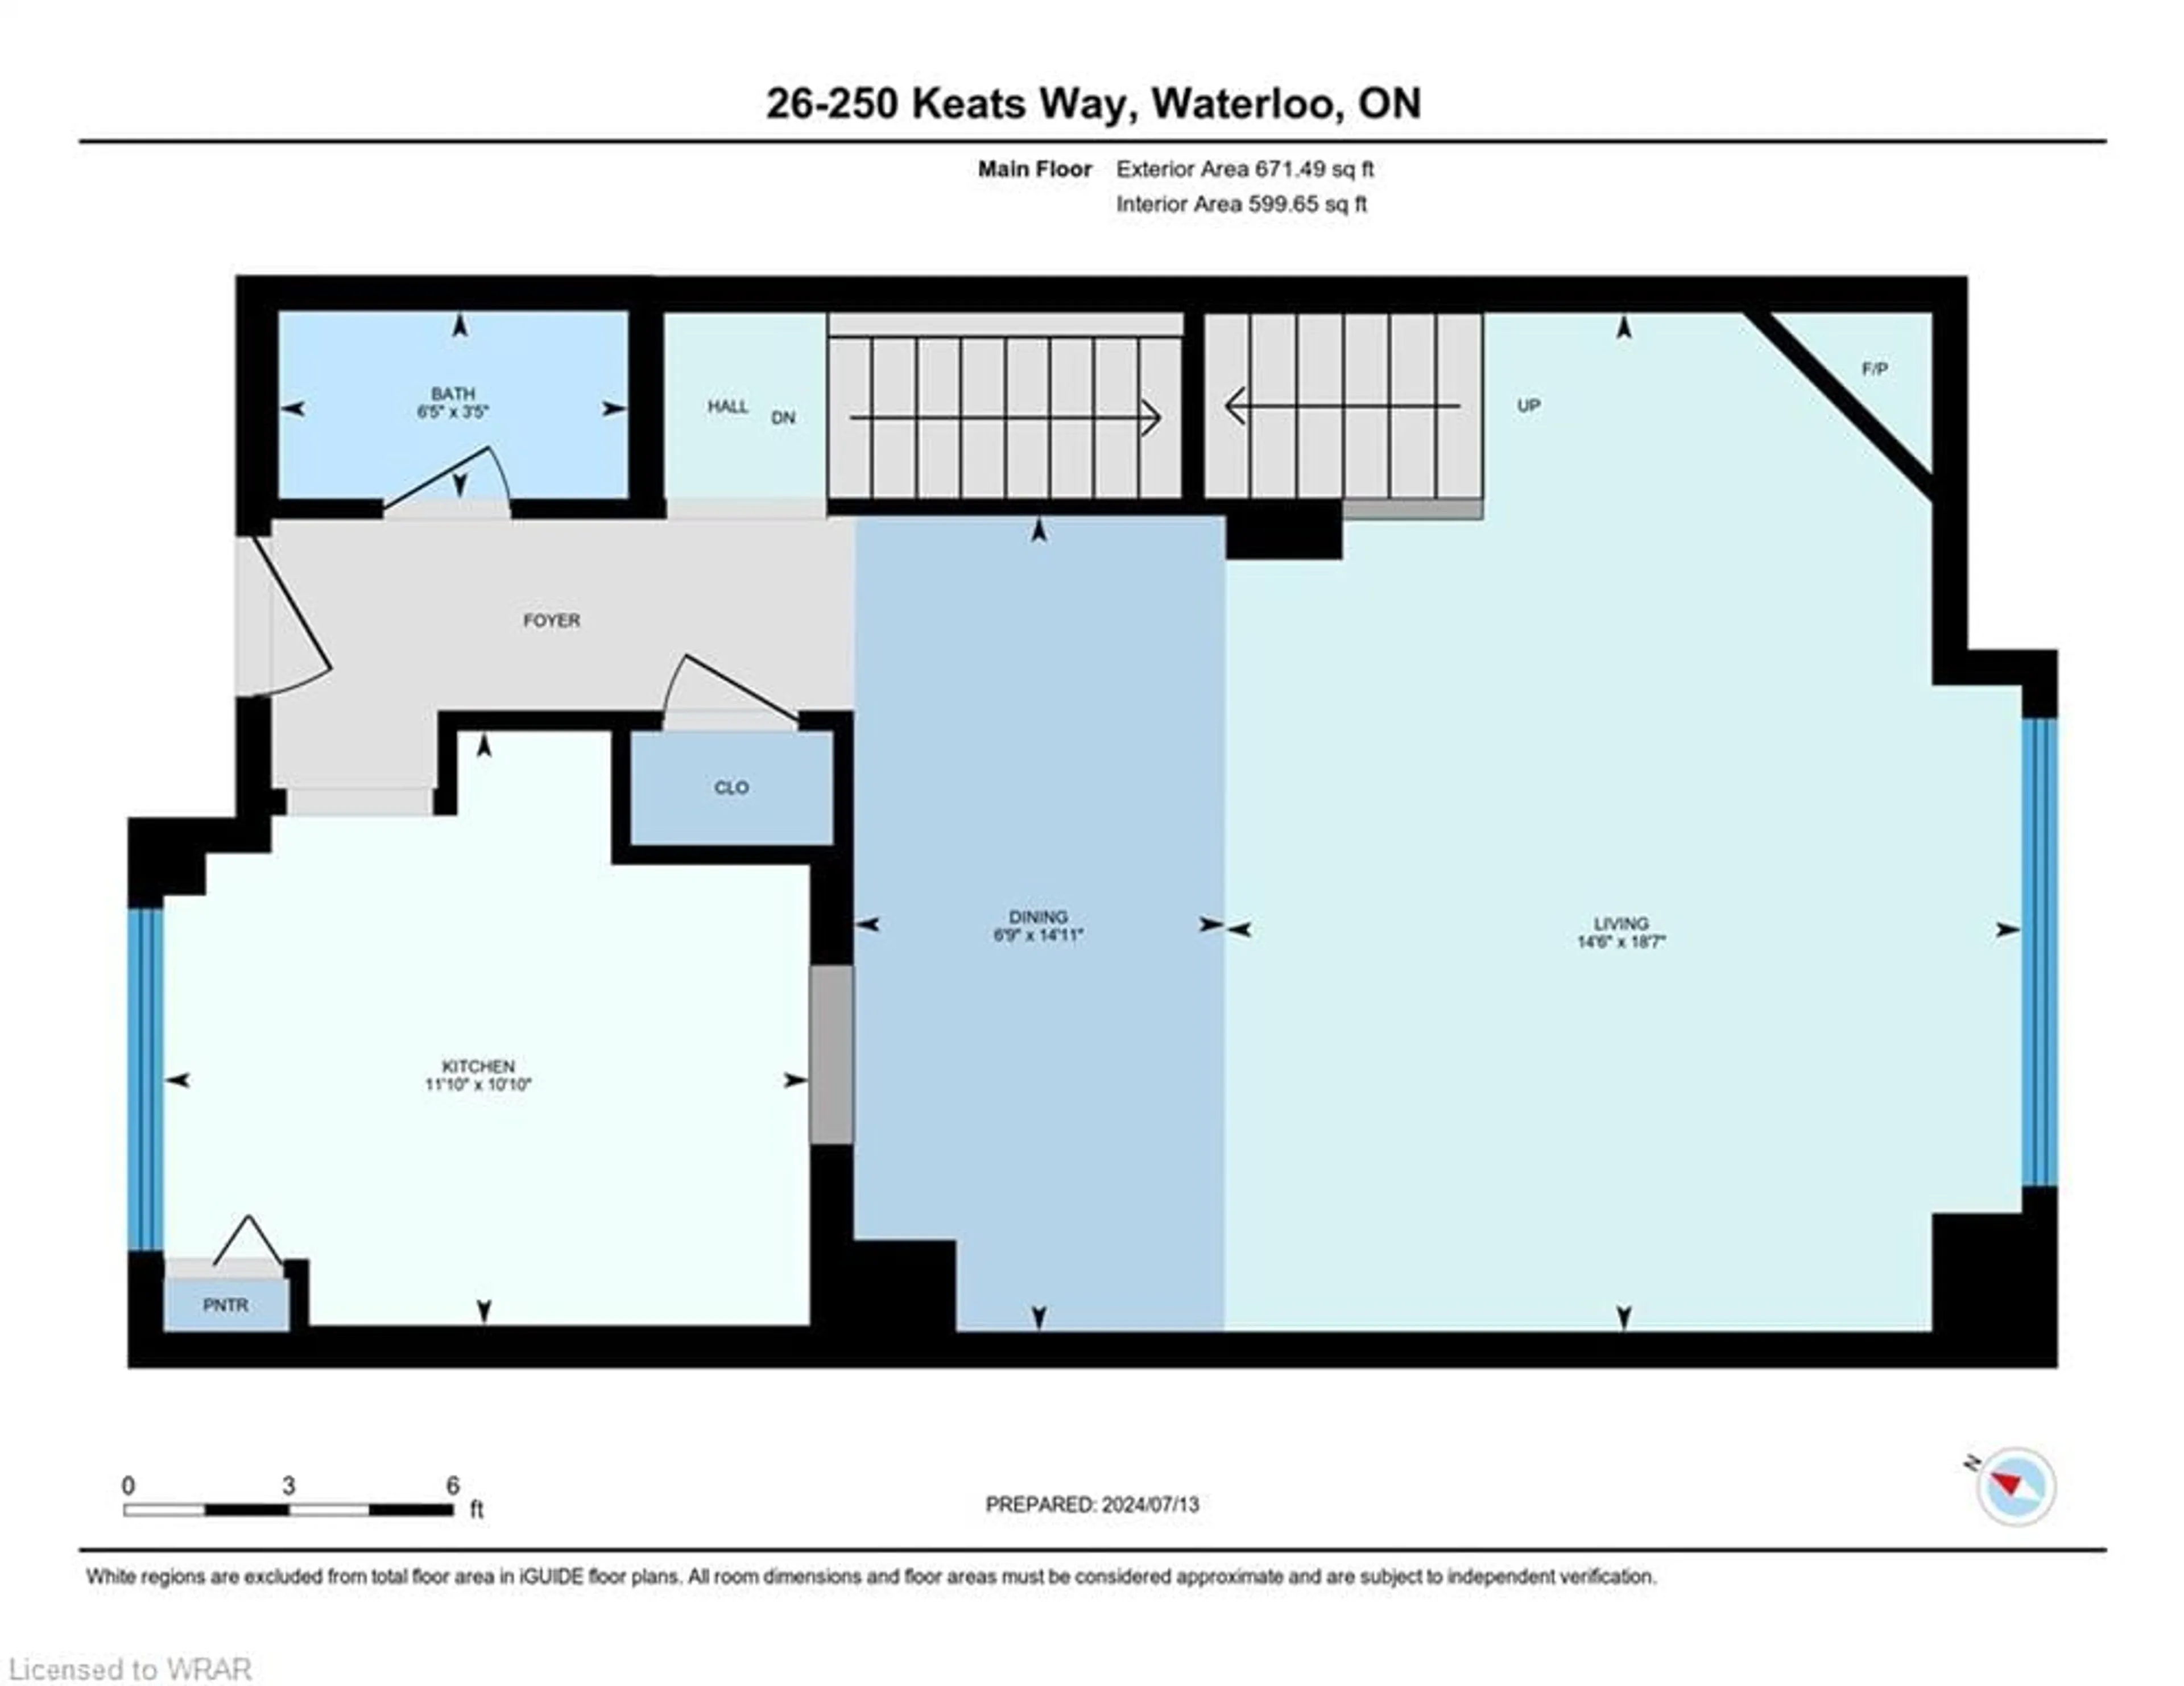 Floor plan for 250 Keats Way #26, Waterloo Ontario N2L 6J5